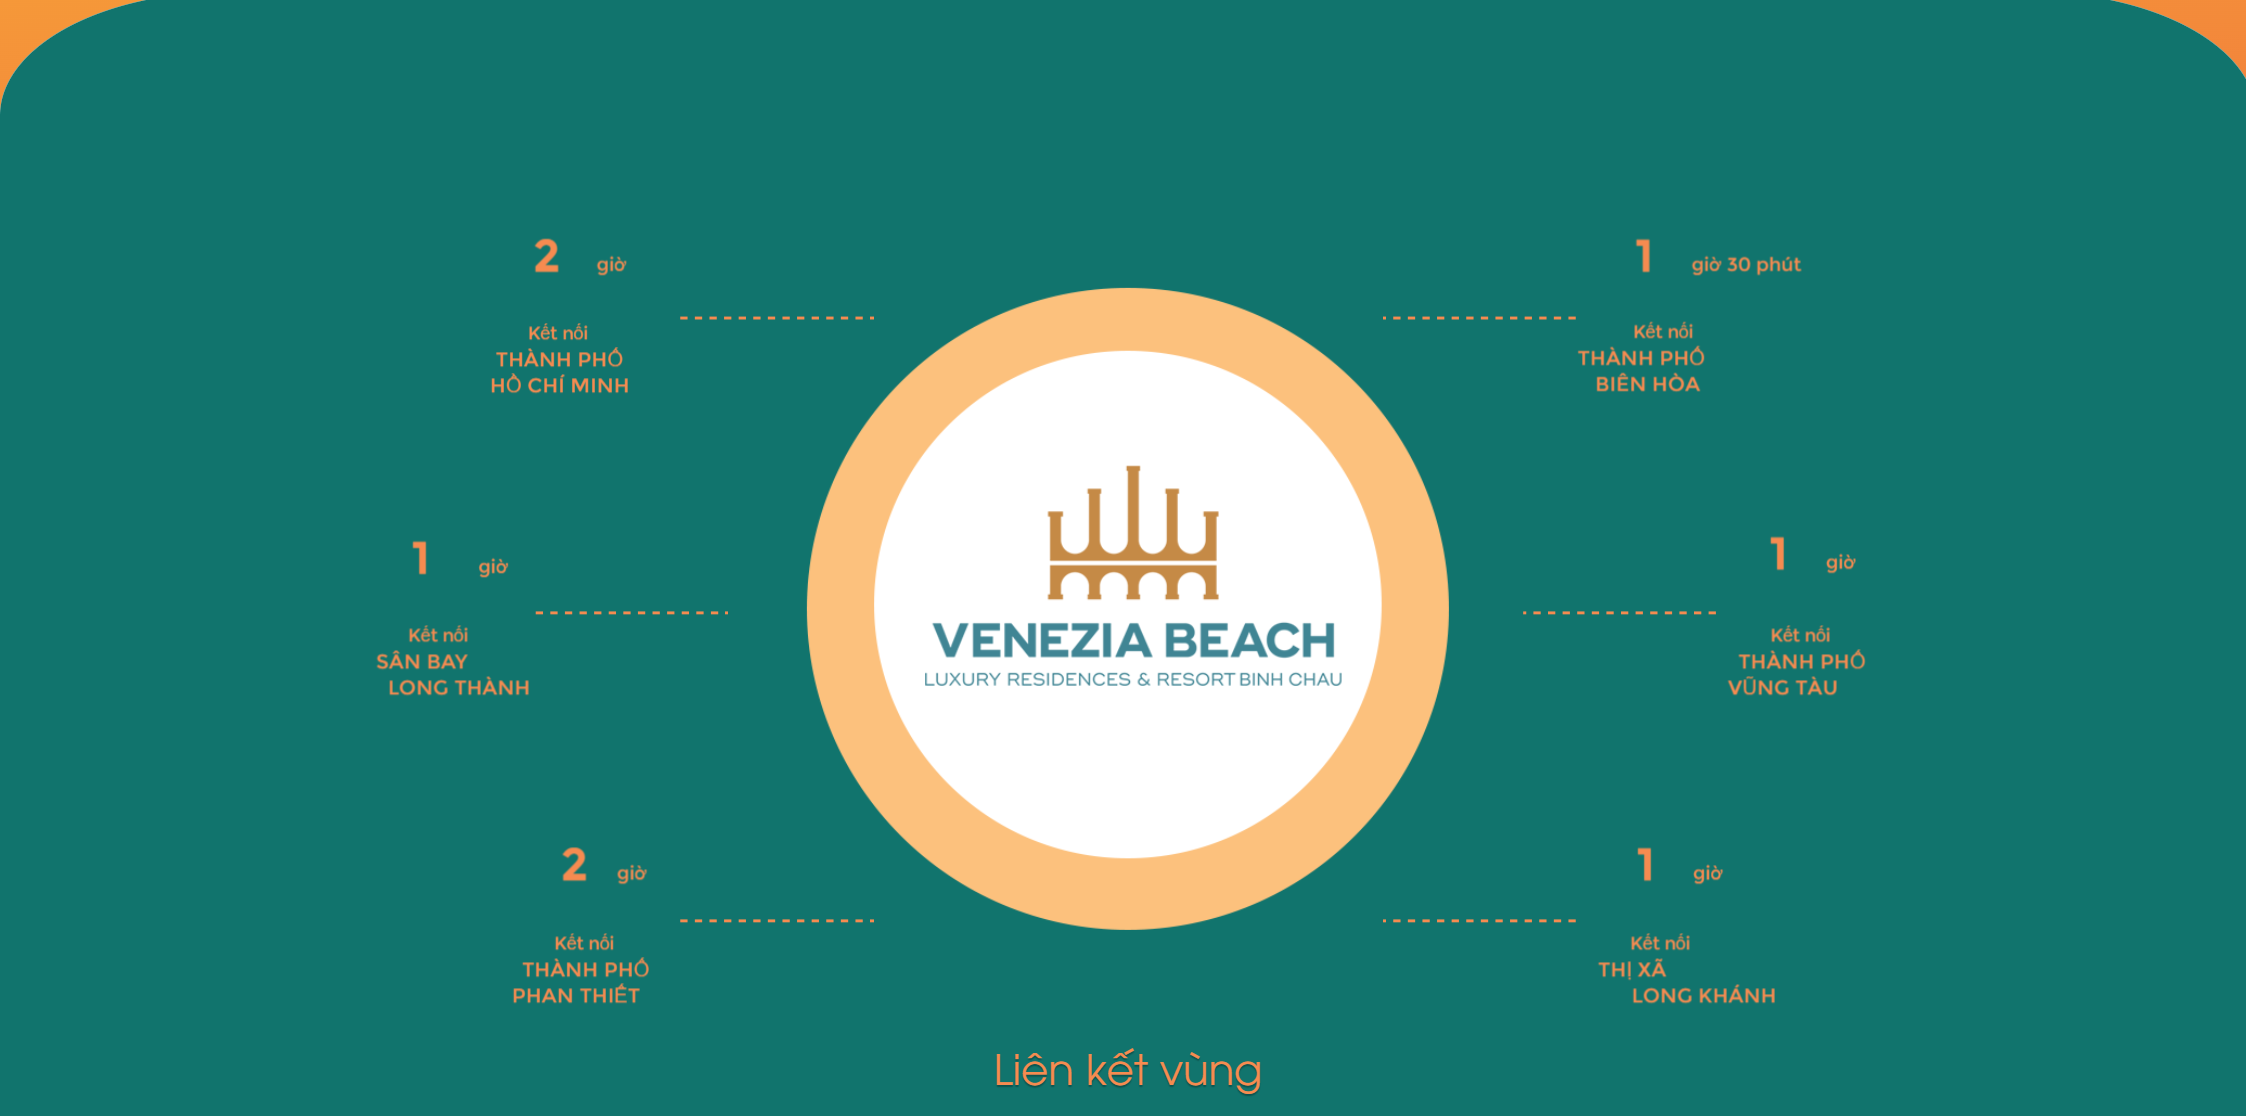 lien-ket-vung-du-an-venezia-beach(3)